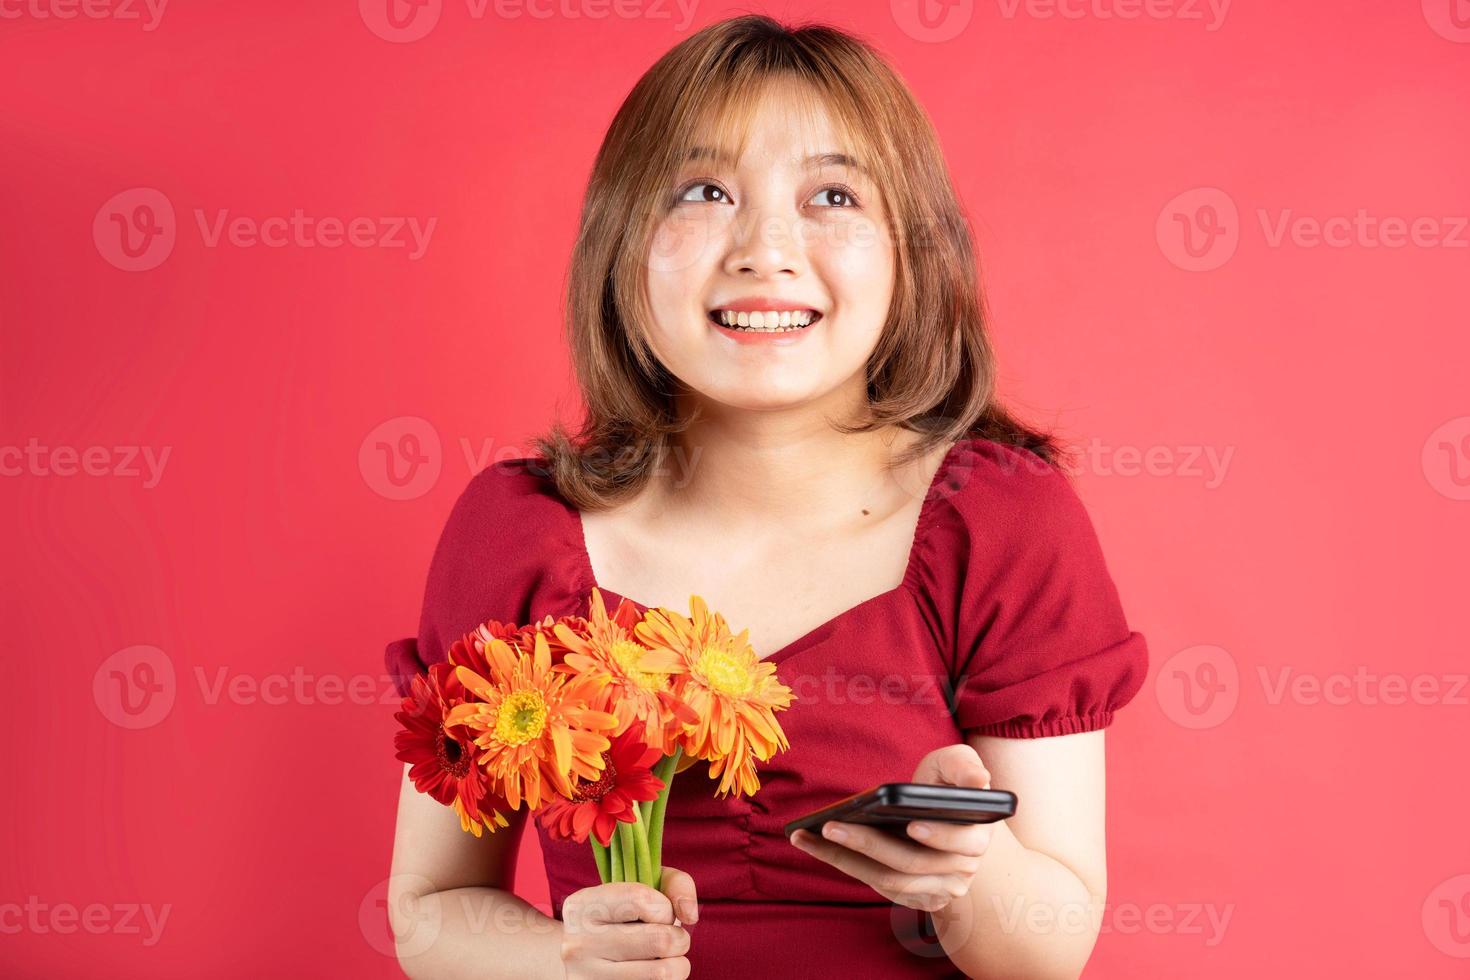 jong meisje dat bloemen vasthoudt en telefoon gebruikt met een vrolijke uitdrukking op de achtergrond foto